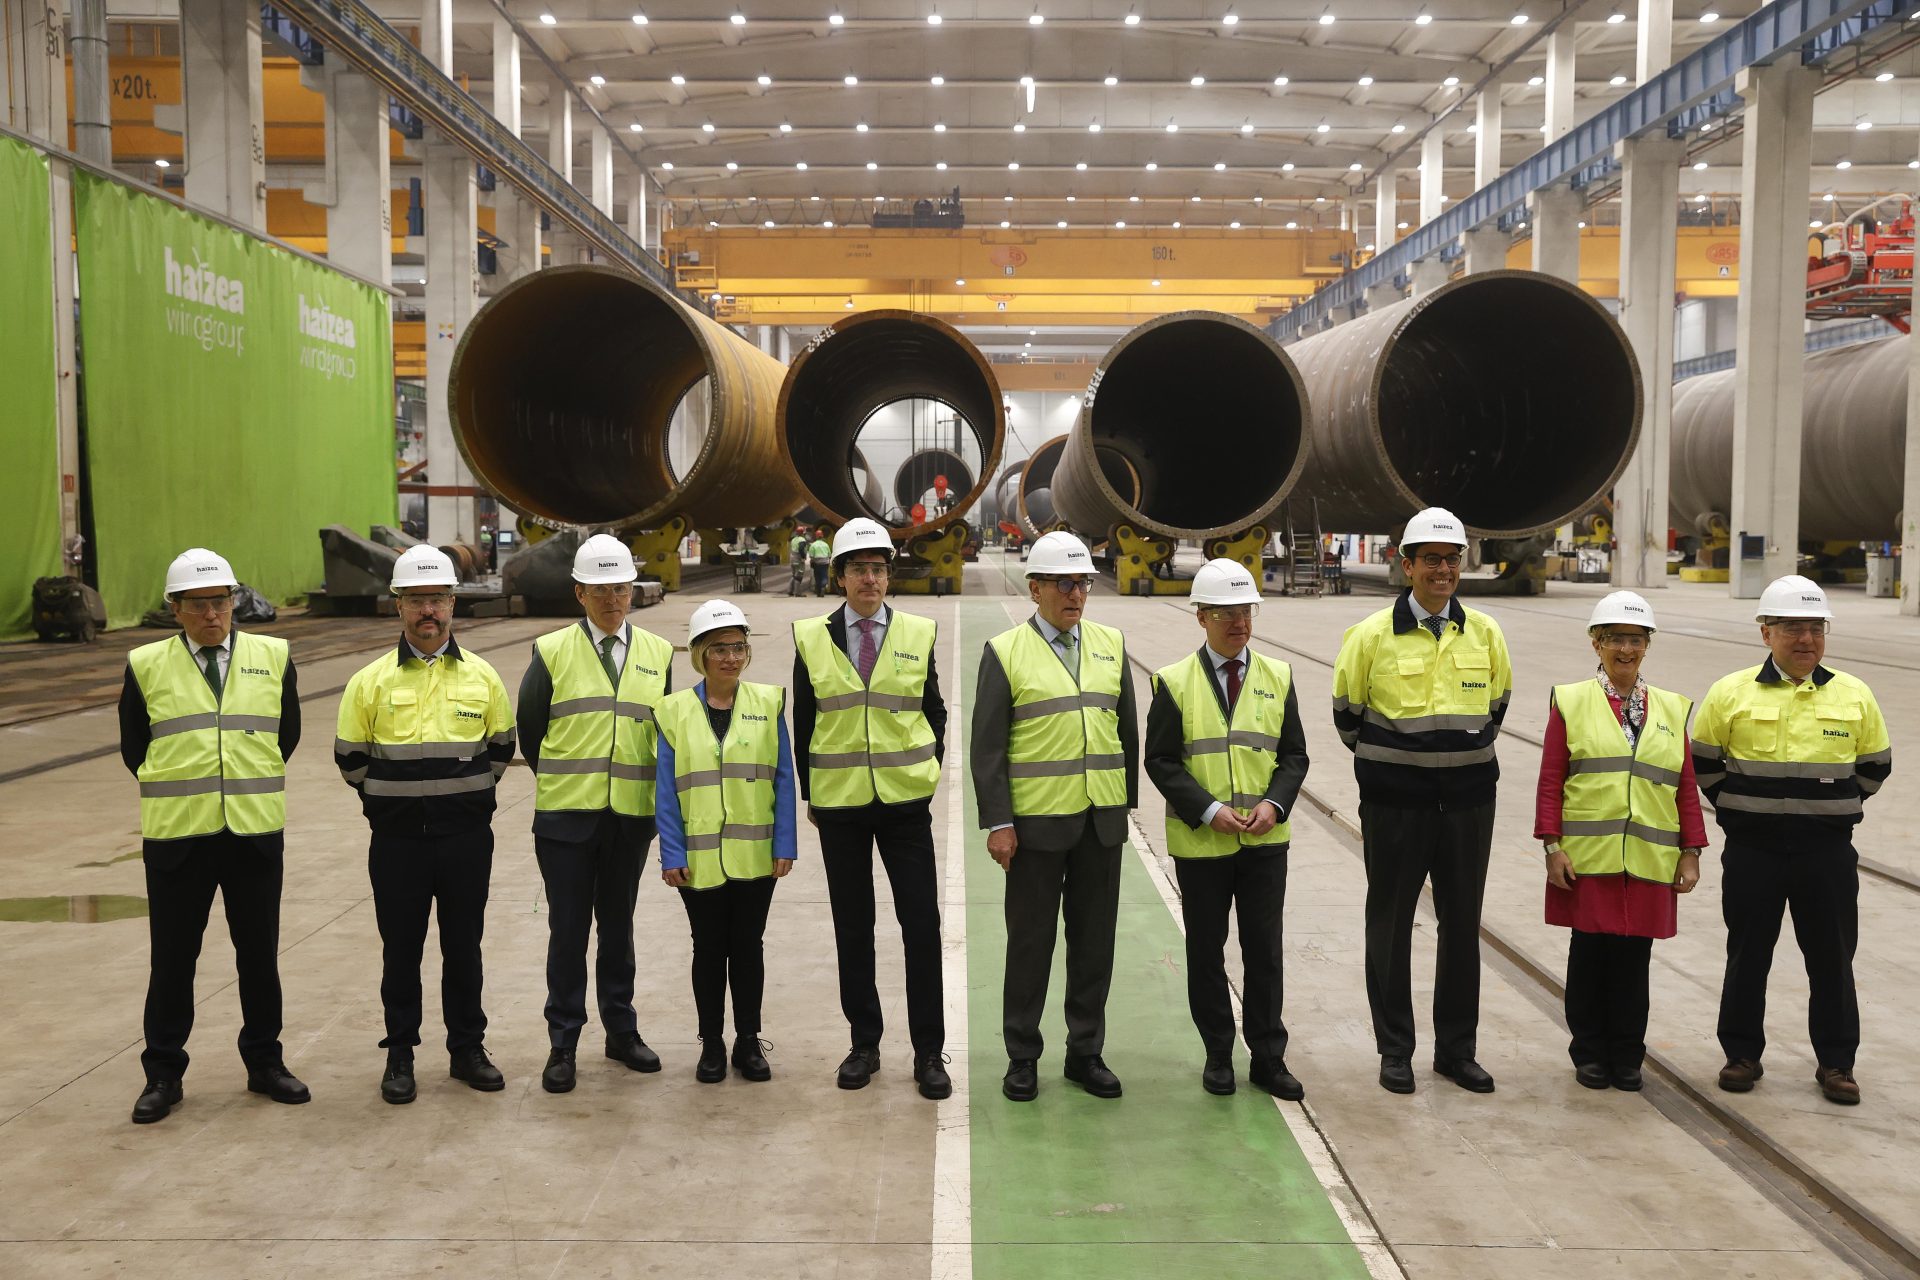 Haizea Wind Group e Iberdrola han firmado un contrato por cerca de 250 millones de euros para que la primera fabrique 50 monopilotes para los aerogeneradores de un parque eólico en Reino Unido propiedad de la eléctrica. EFE/Miguel Toña